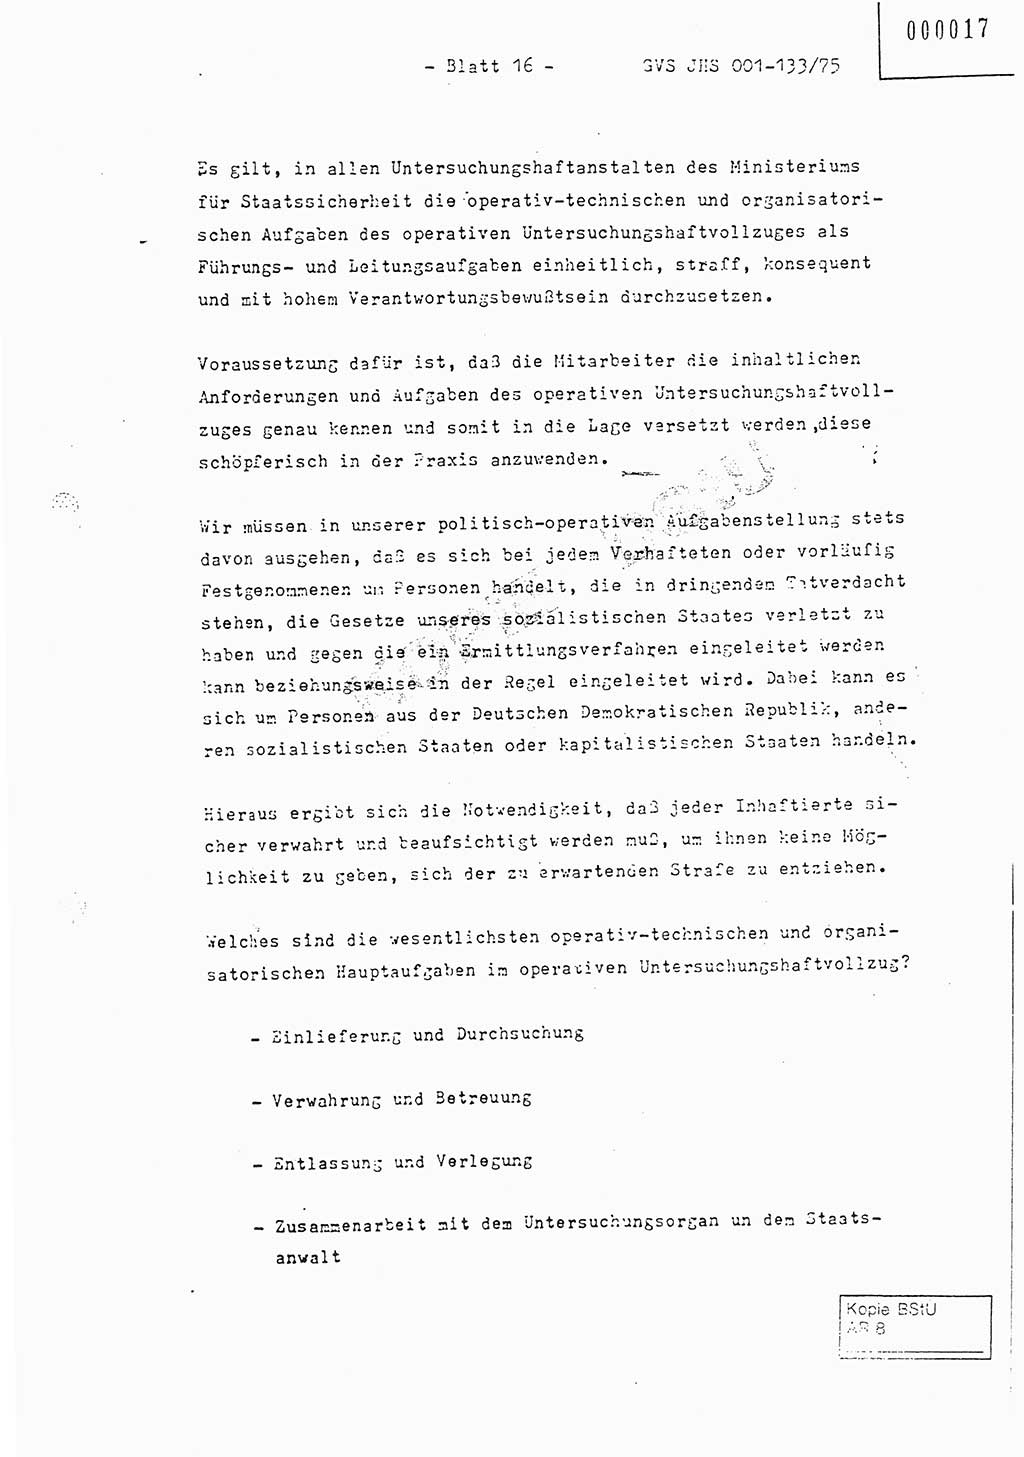 Fachschulabschlußarbeit Major Werner Braun (Abt. ⅩⅣ), Hauptmann Klaus Zeiß (Abt. ⅩⅣ), Ministerium für Staatssicherheit (MfS) [Deutsche Demokratische Republik (DDR)], Juristische Hochschule (JHS), Geheime Verschlußsache (GVS) 001-133/75, Potsdam 1976, Blatt 16 (FS-Abschl.-Arb. MfS DDR JHS GVS 001-133/75 1976, Bl. 16)